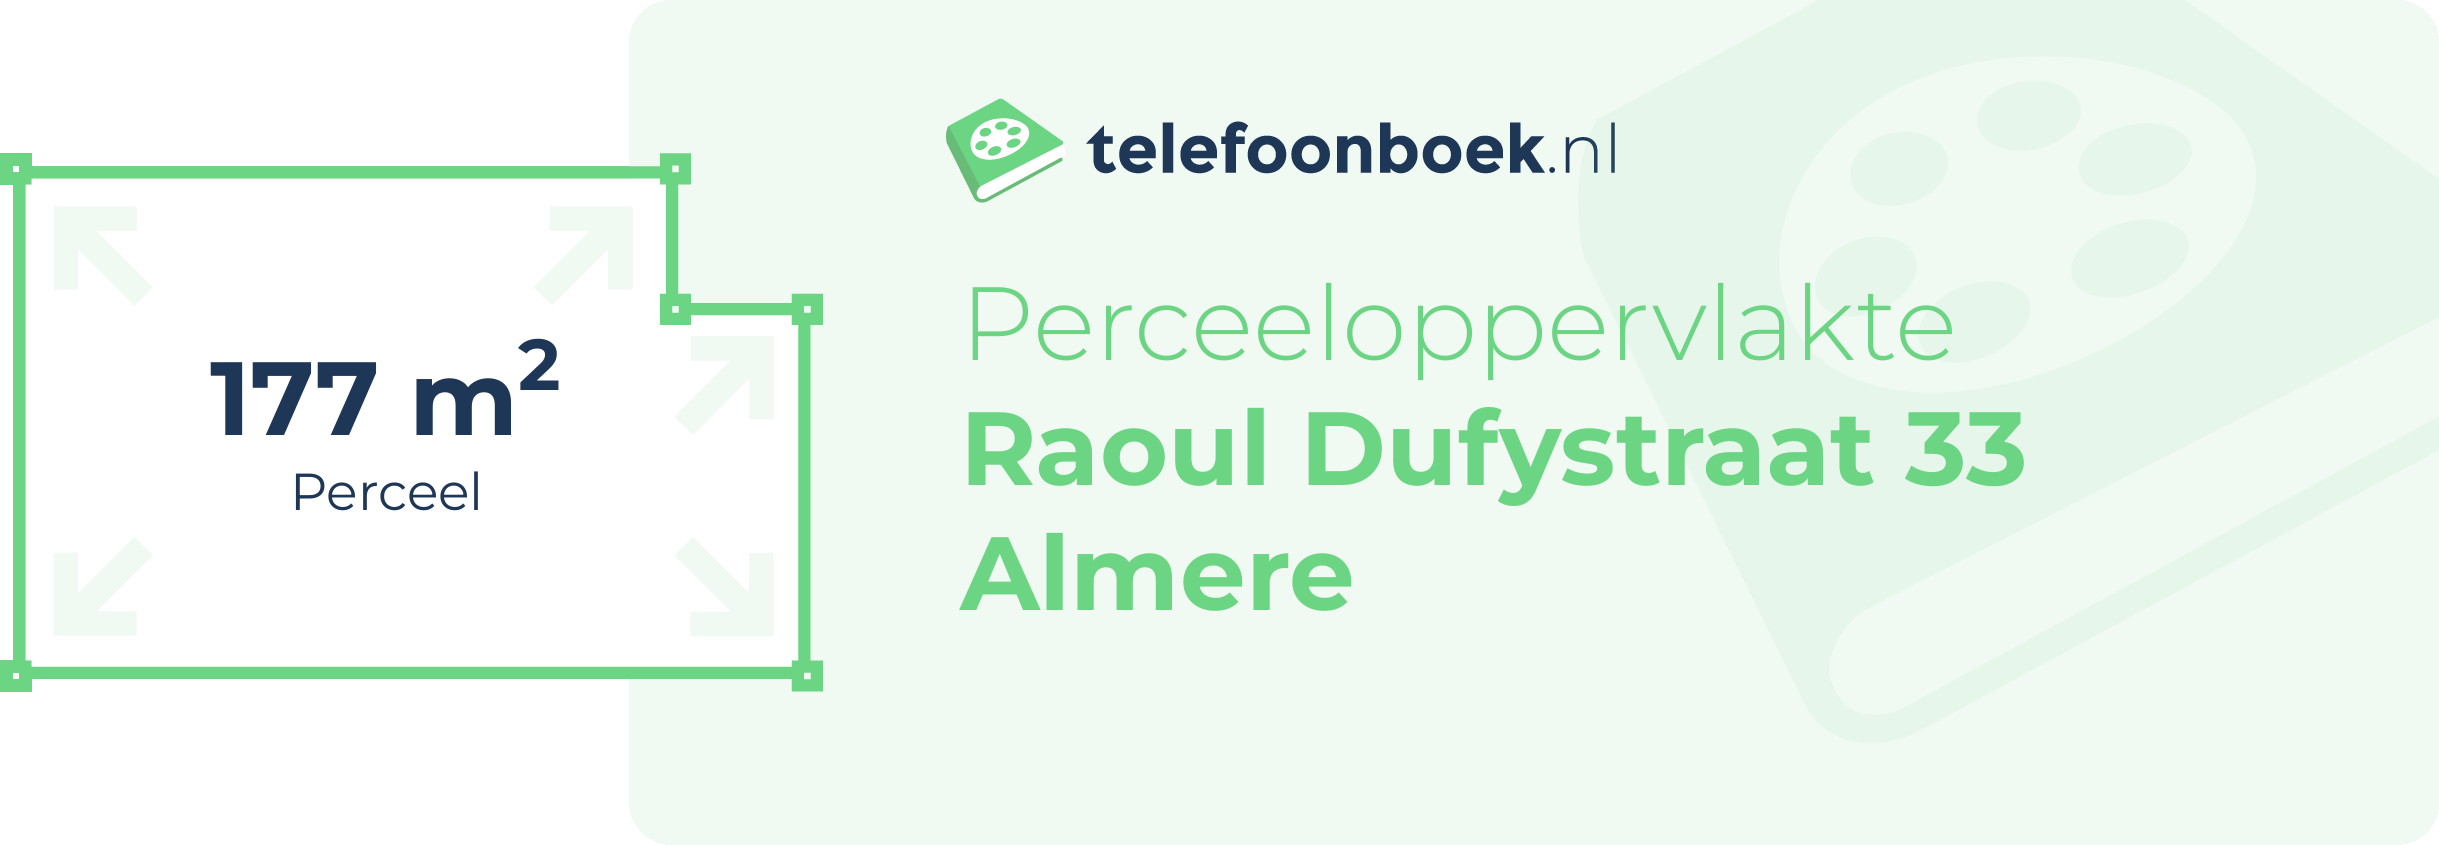 Perceeloppervlakte Raoul Dufystraat 33 Almere